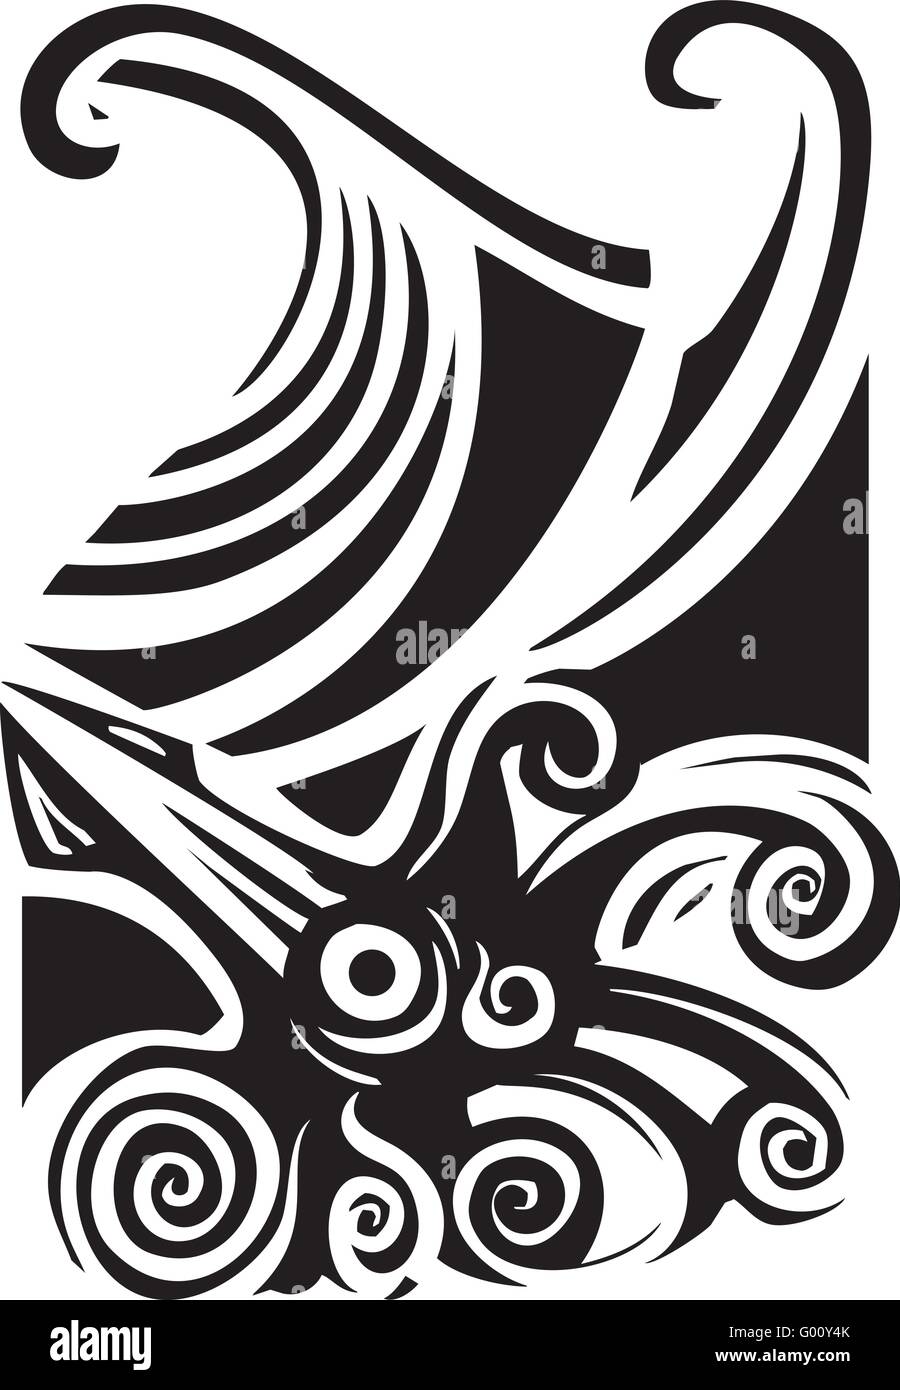 Holzschnitt-Stil Bild ein riesiger Tintenfisch in den Wellen des Ozeans. Stock Vektor